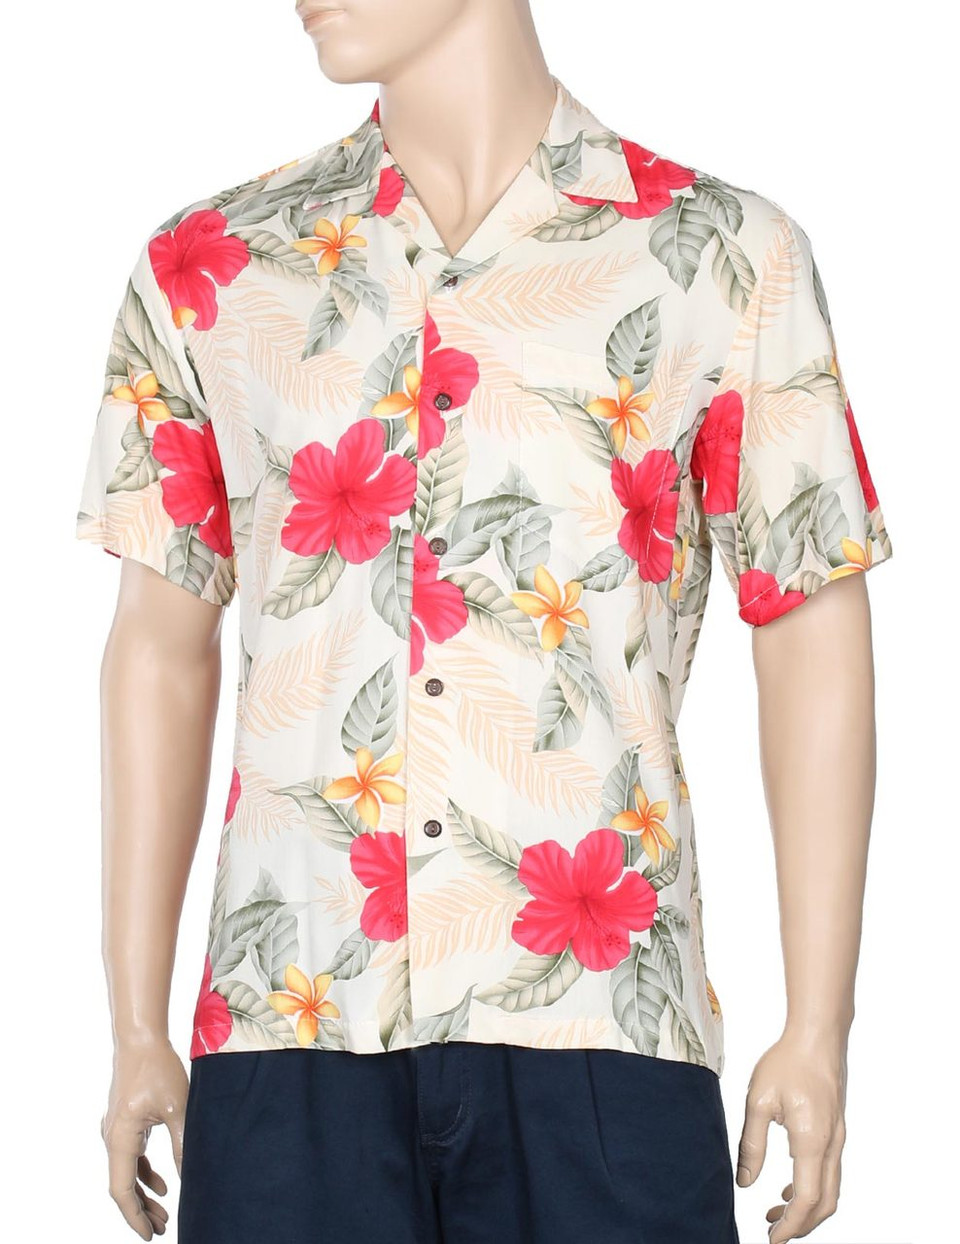 Hawaiian Shirts | New 2020 Aloha Shirts Designs | Hawaiian Wedding Place